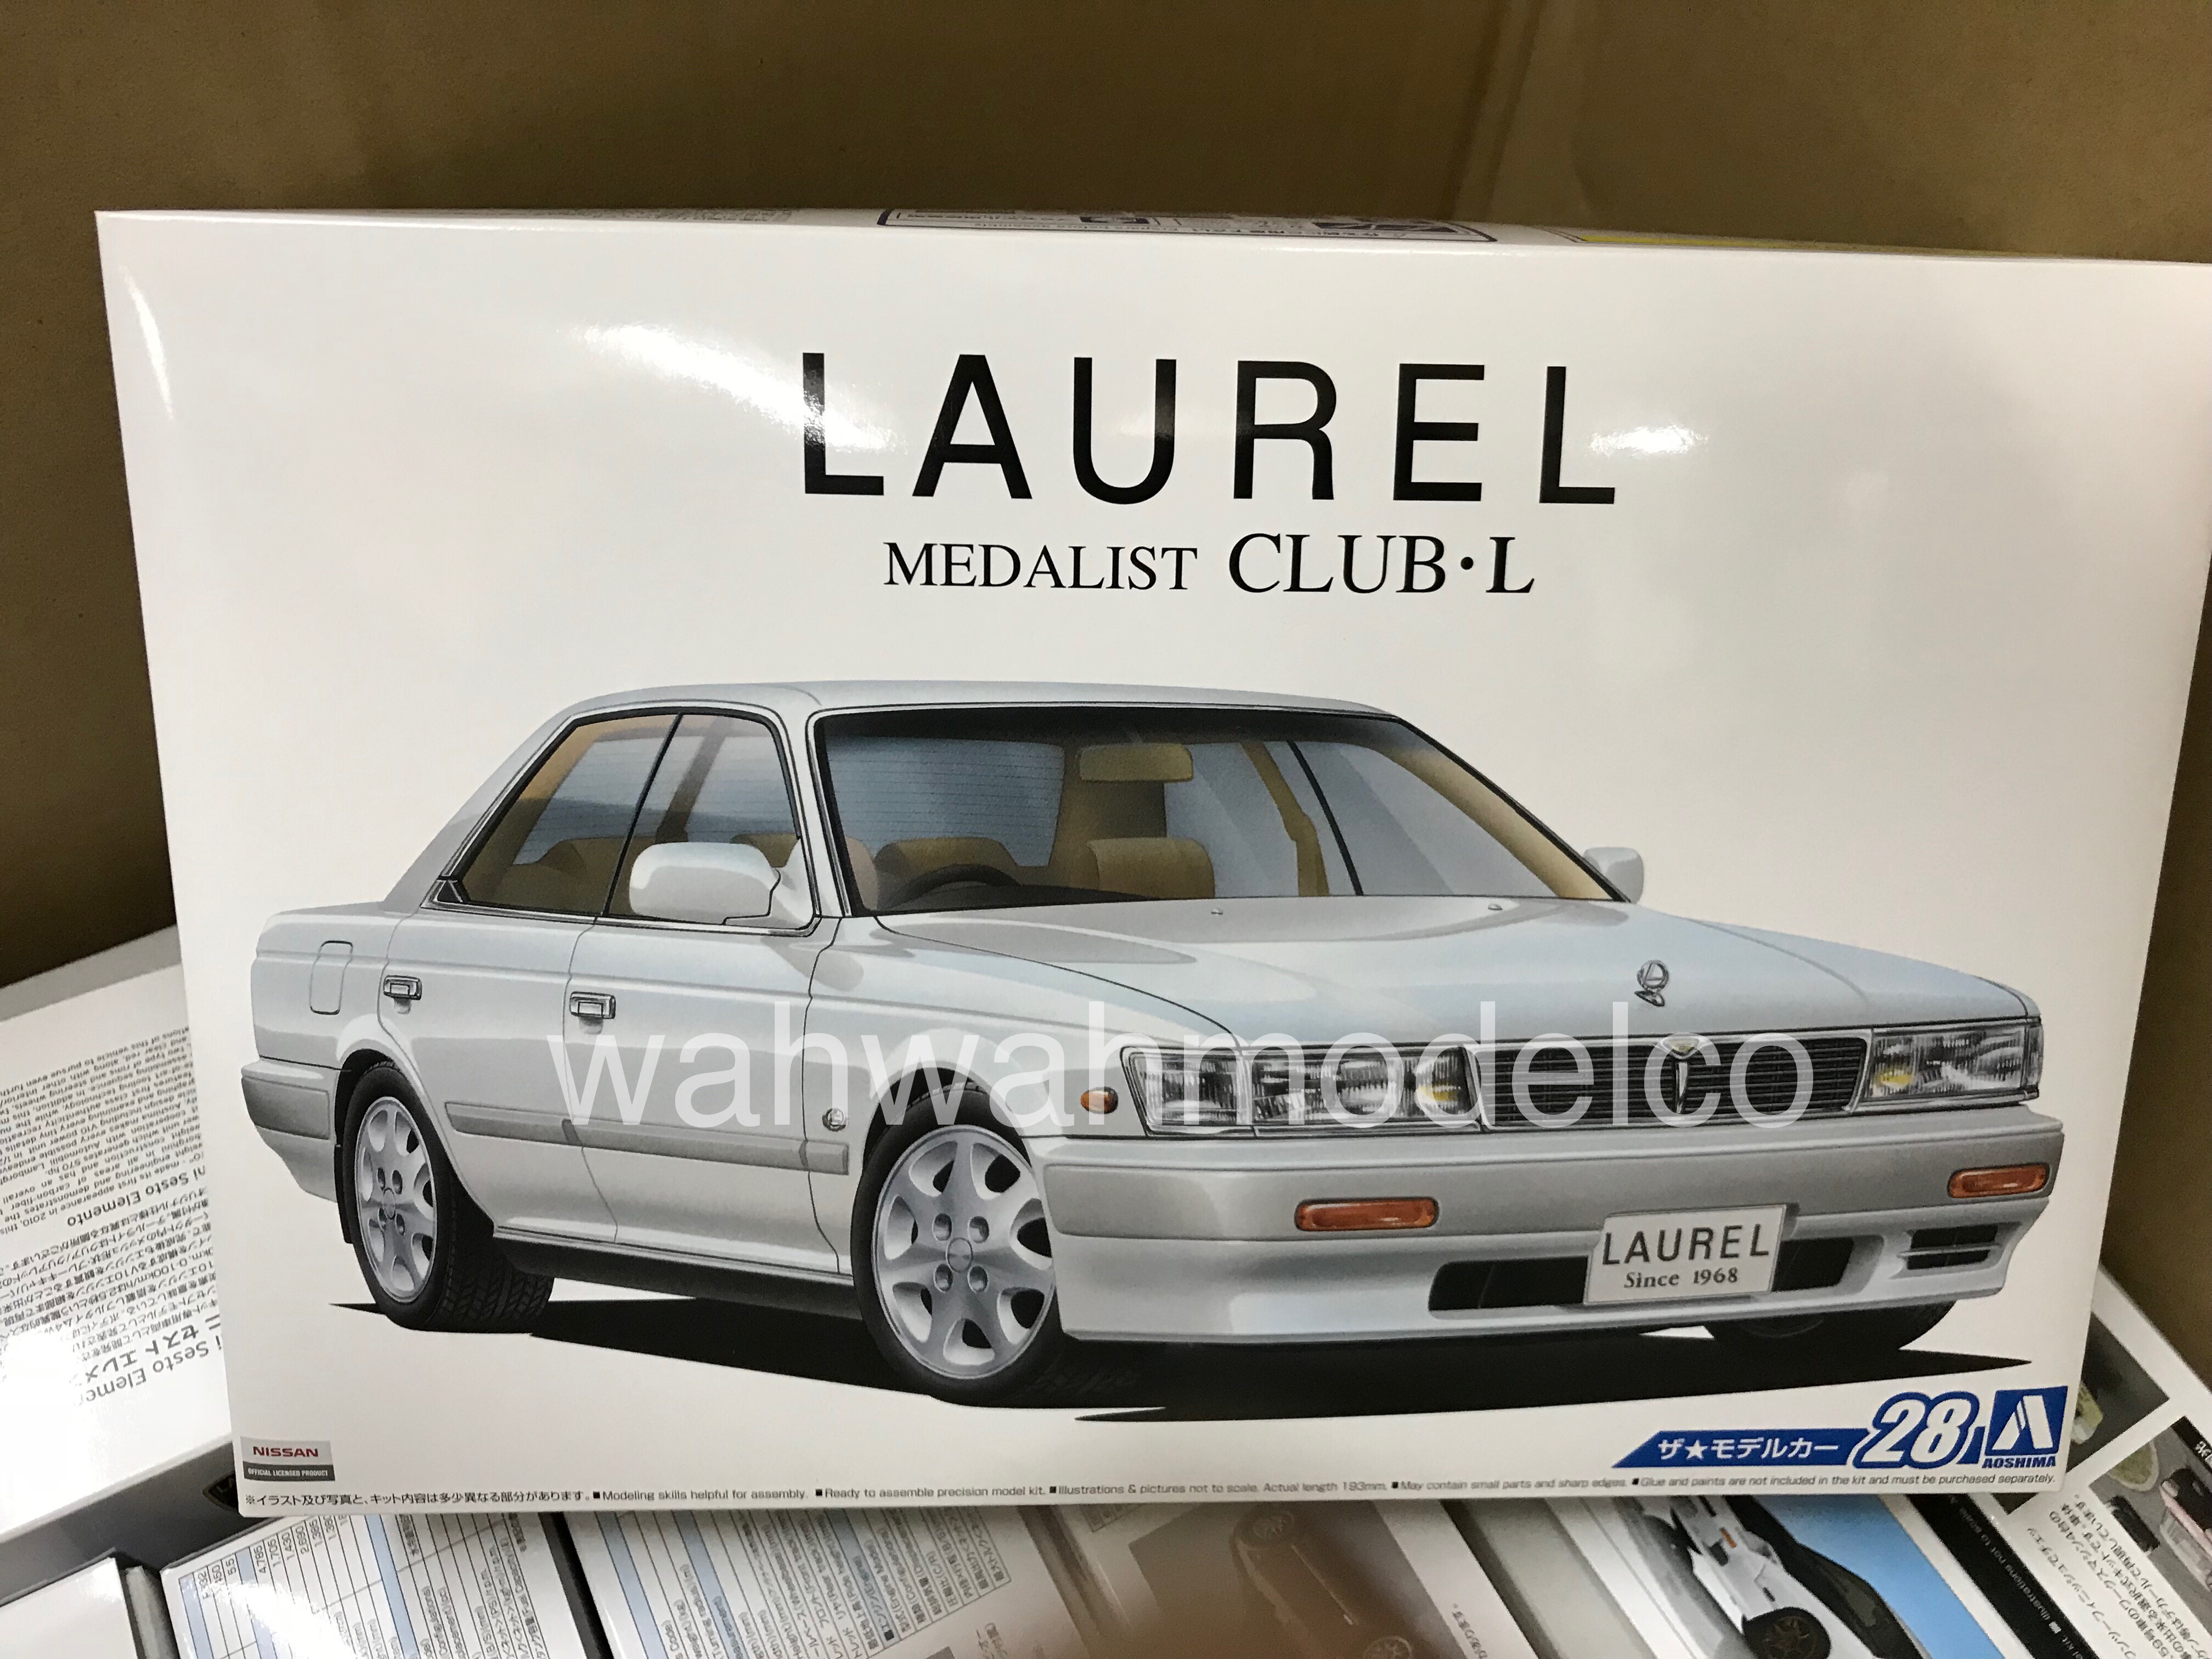 Fujimi ID-181 Nissan Laurel Medalist Club S HC33 1/24 scale kit 